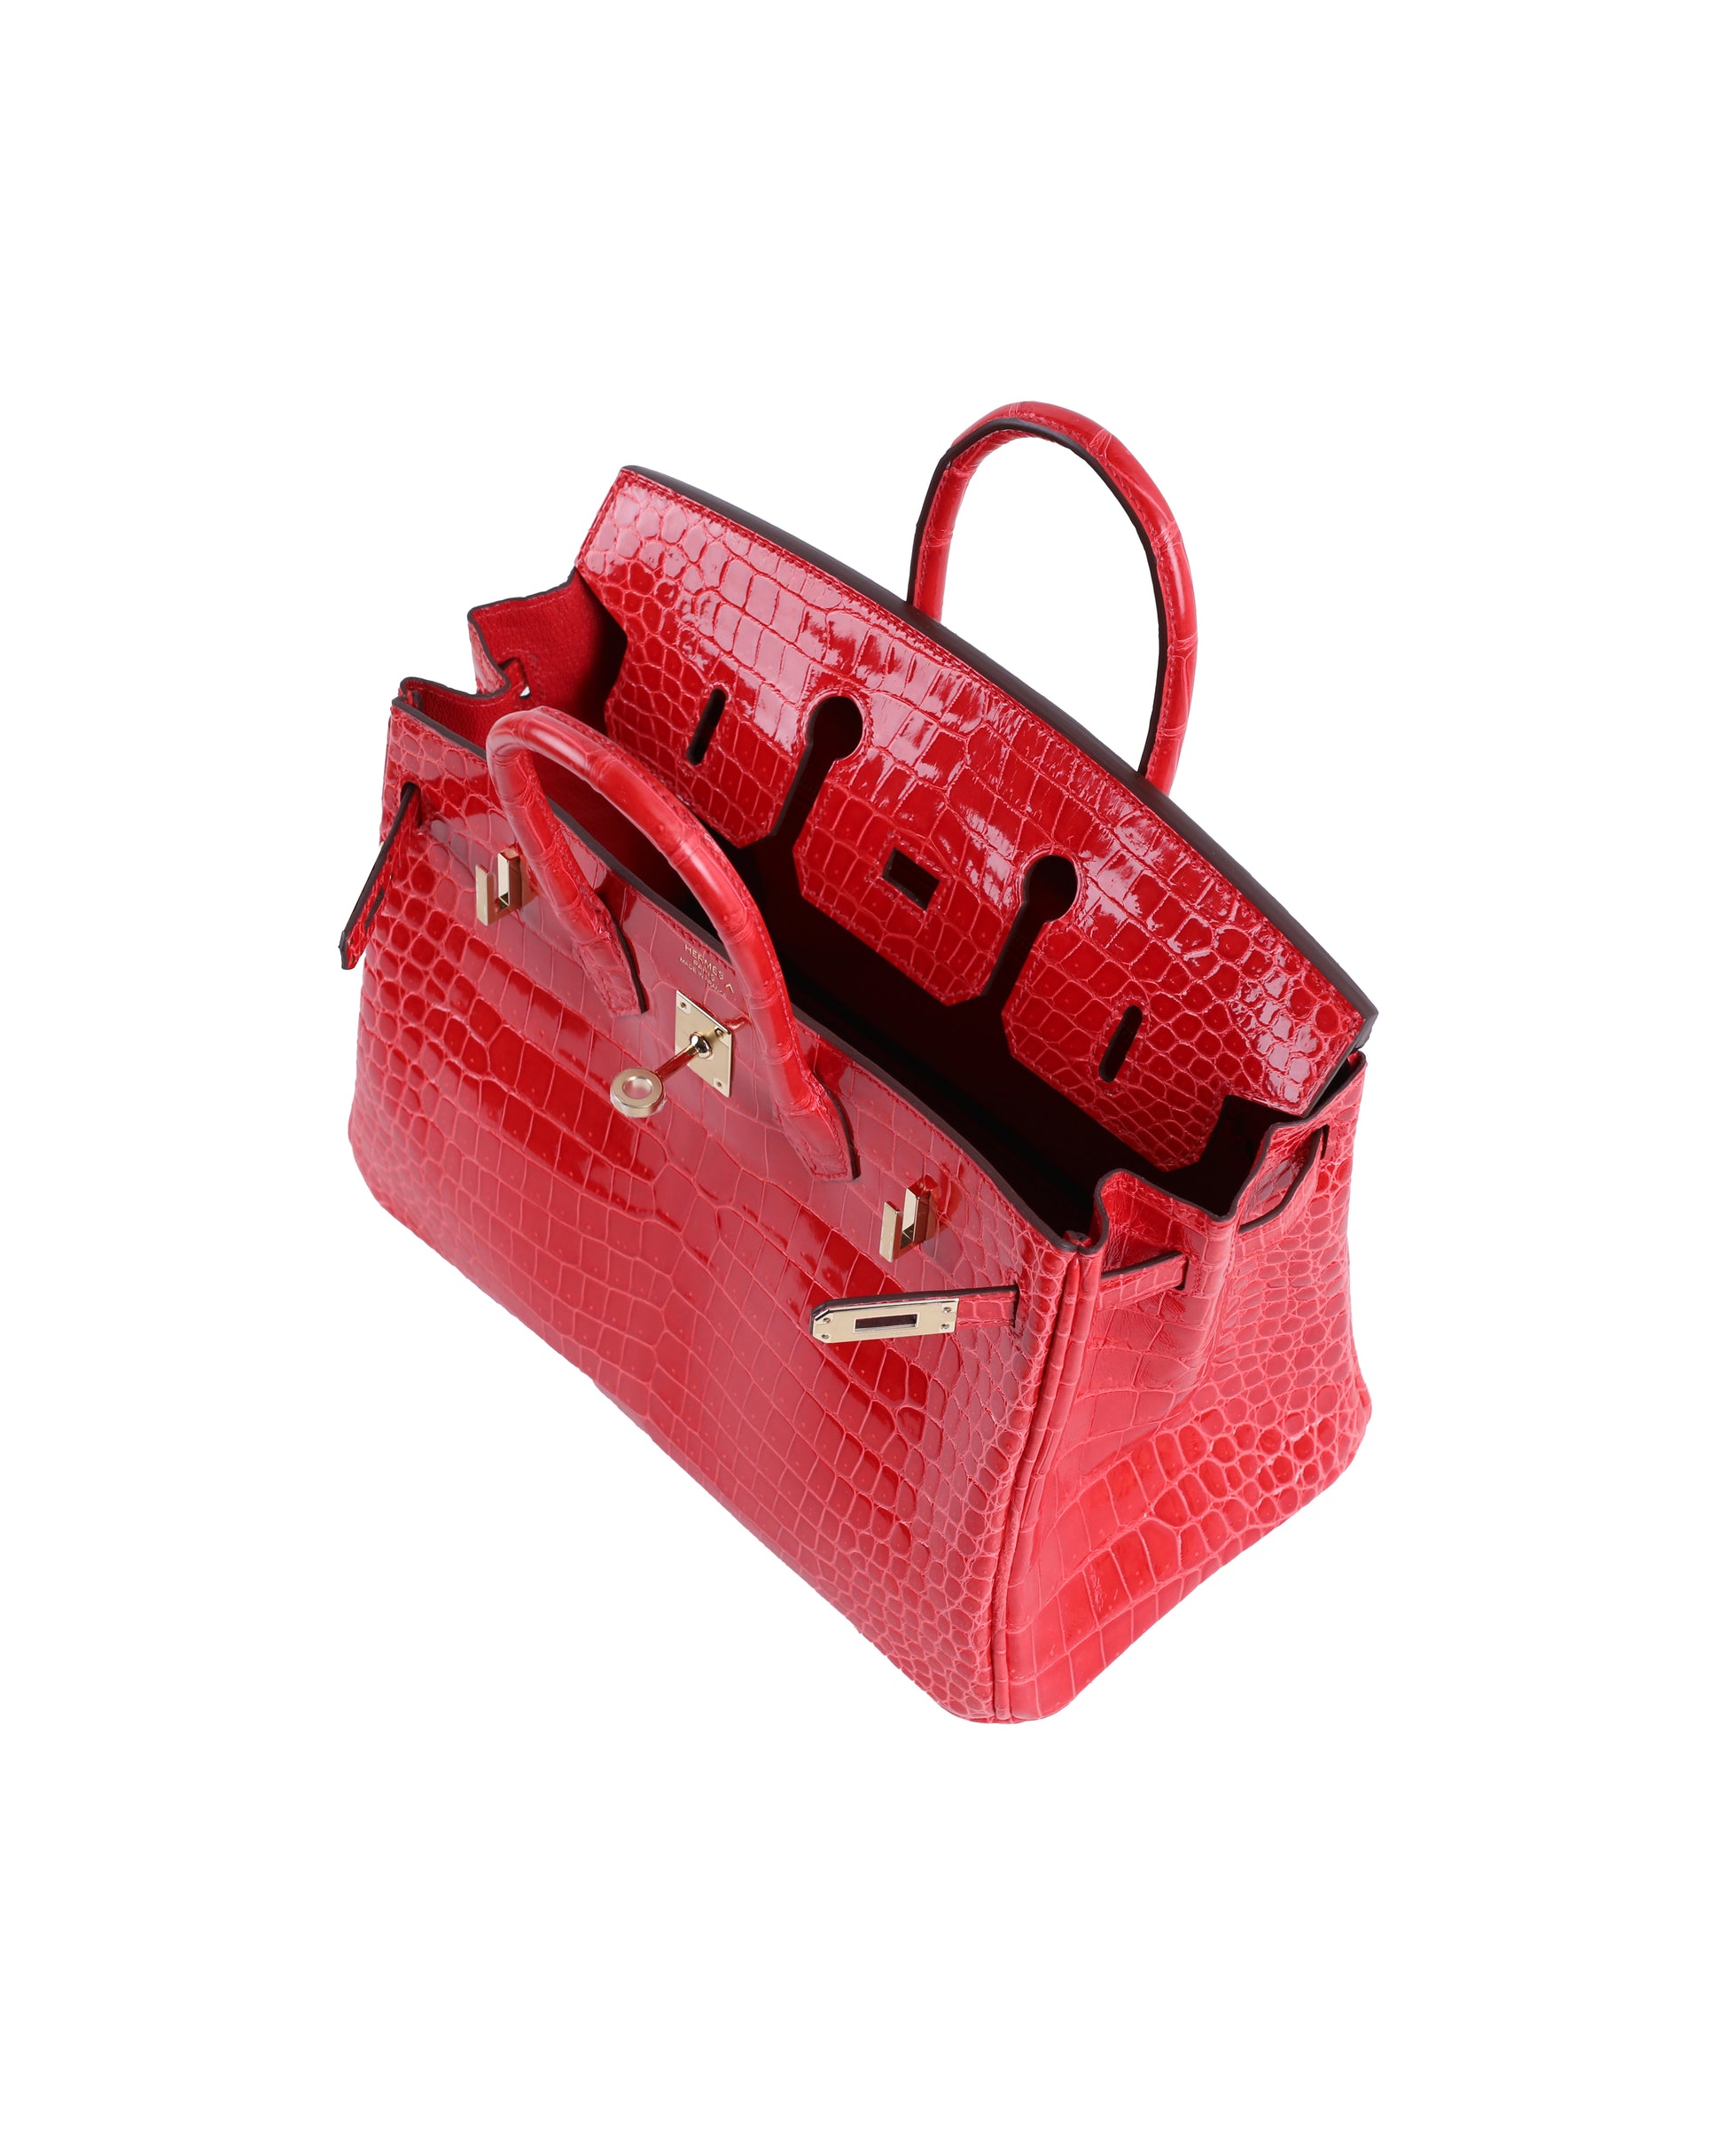 Hermès Birkin 25 Rouge de Coeur Shiny Porosus Crocodile 18K White Gold –  ZAK BAGS ©️